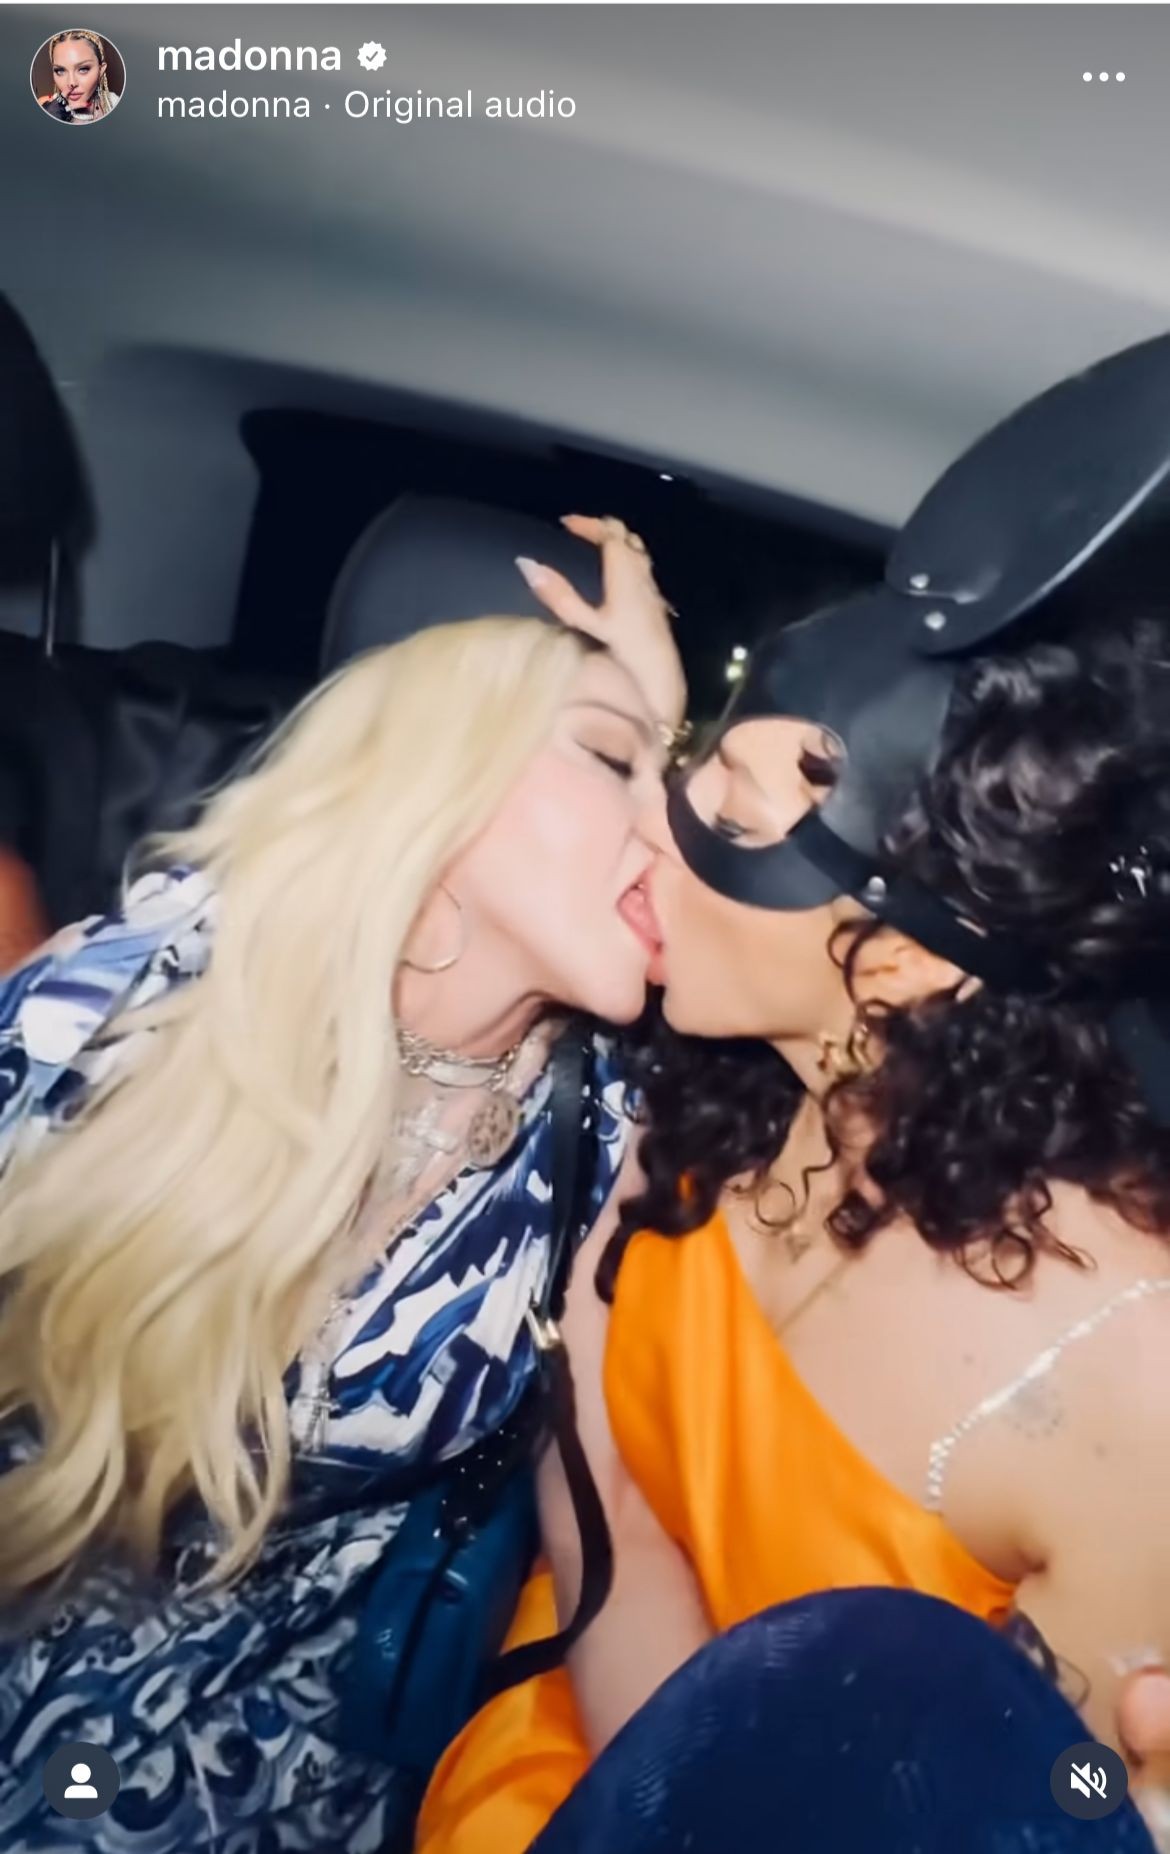 Madonna mostra seu empoderamento e beija duas amigas no aniversário de 64 anos (Foto: Reprodução/ Instagram)